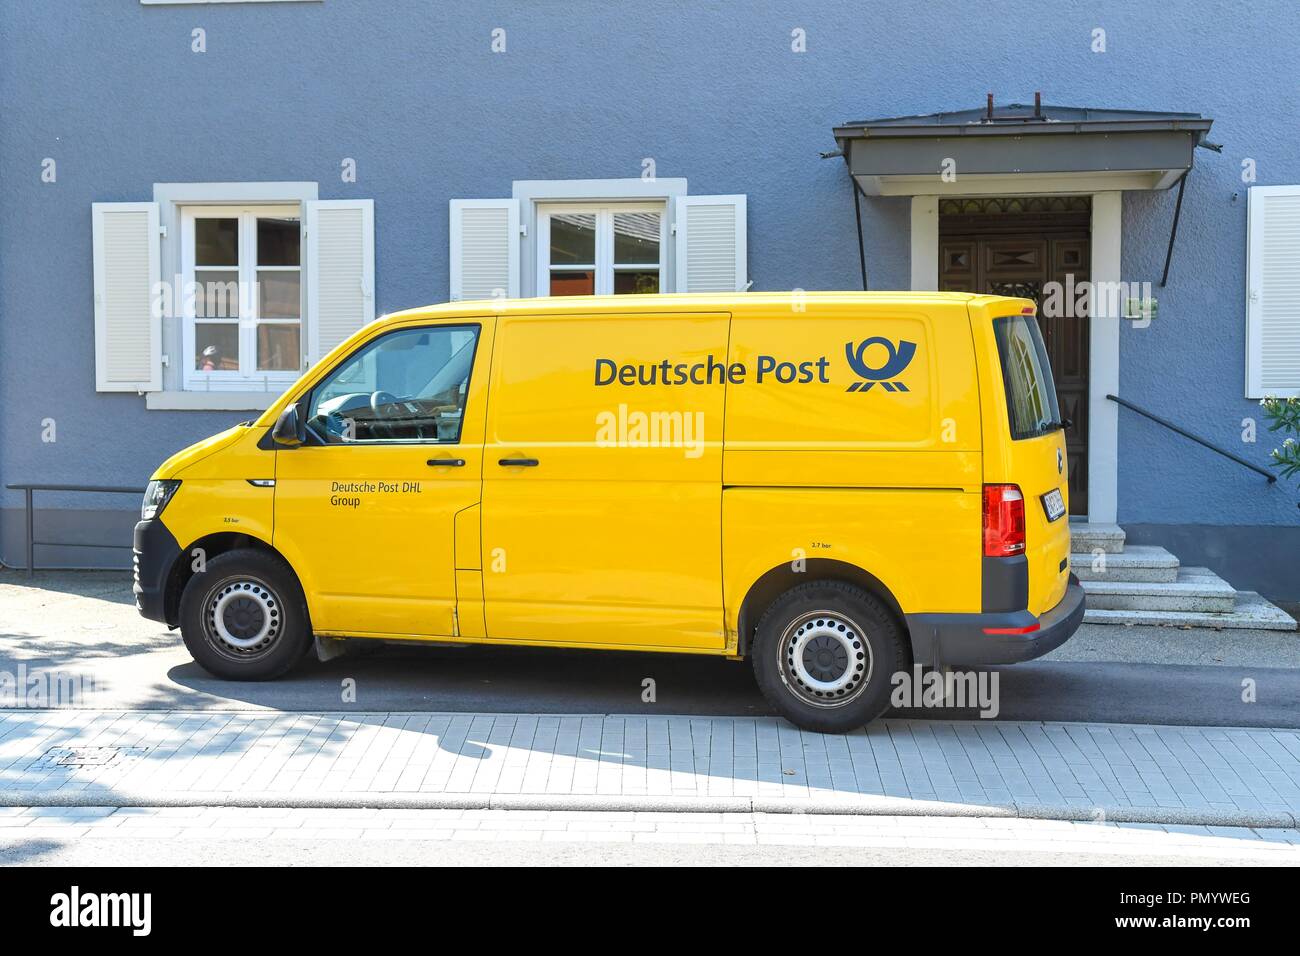 Deutsche post van hi-res stock photography and images - Alamy